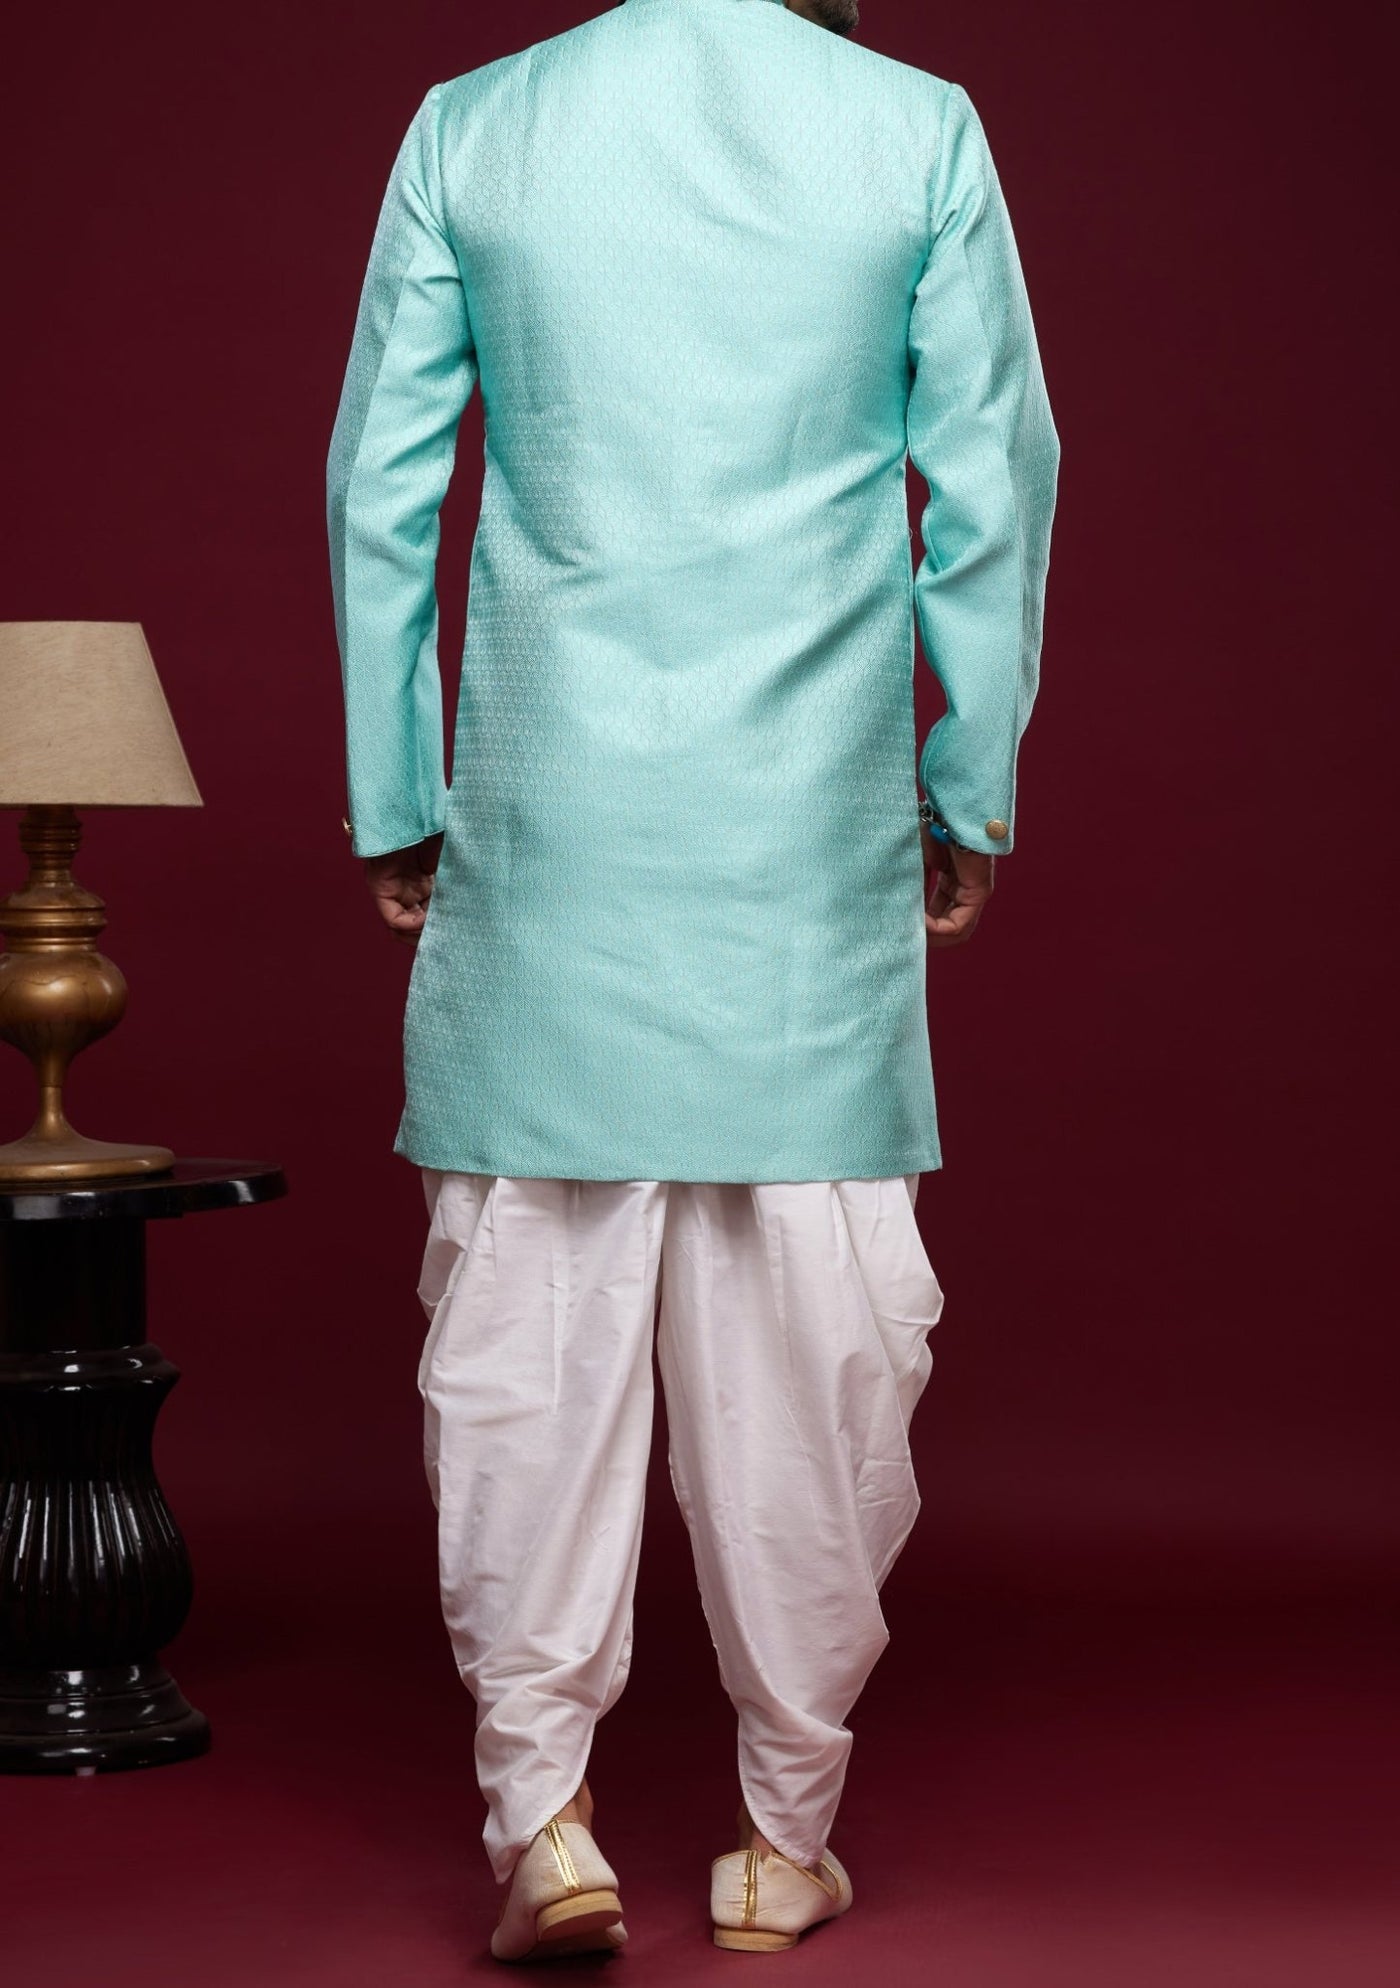 Men's Semi Indo Western Party Wear Sherwani Suit - db23840